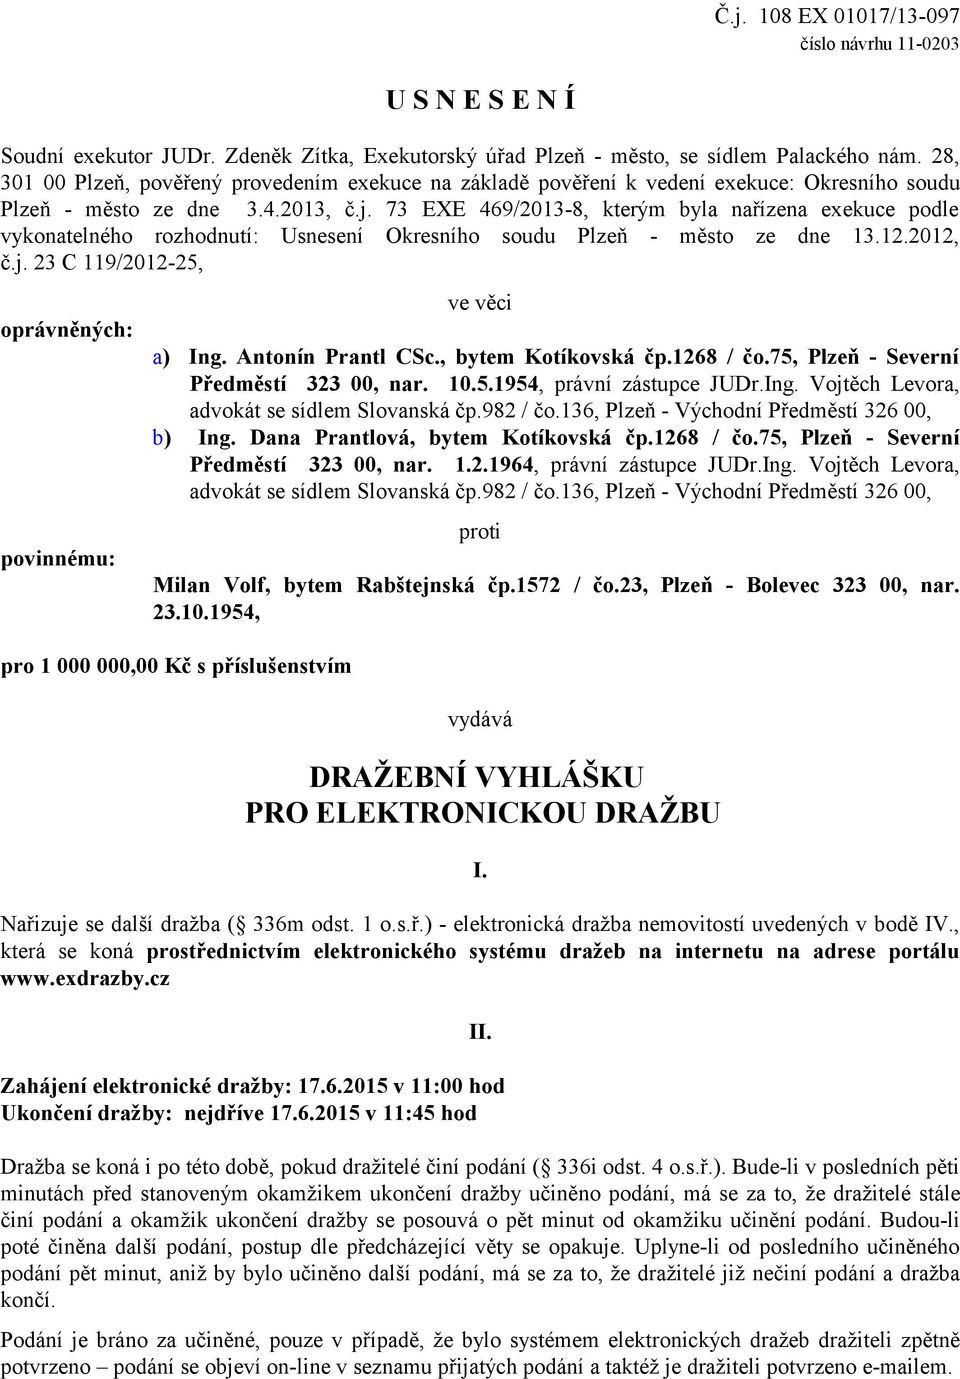 73 EXE 469/2013-8, kterým byla nařízena exekuce podle vykonatelného rozhodnutí: Usnesení Okresního soudu Plzeň - město ze dne 13.12.2012, č.j. 23 C 119/2012-25, oprávněných: povinnému: ve věci a) Ing.